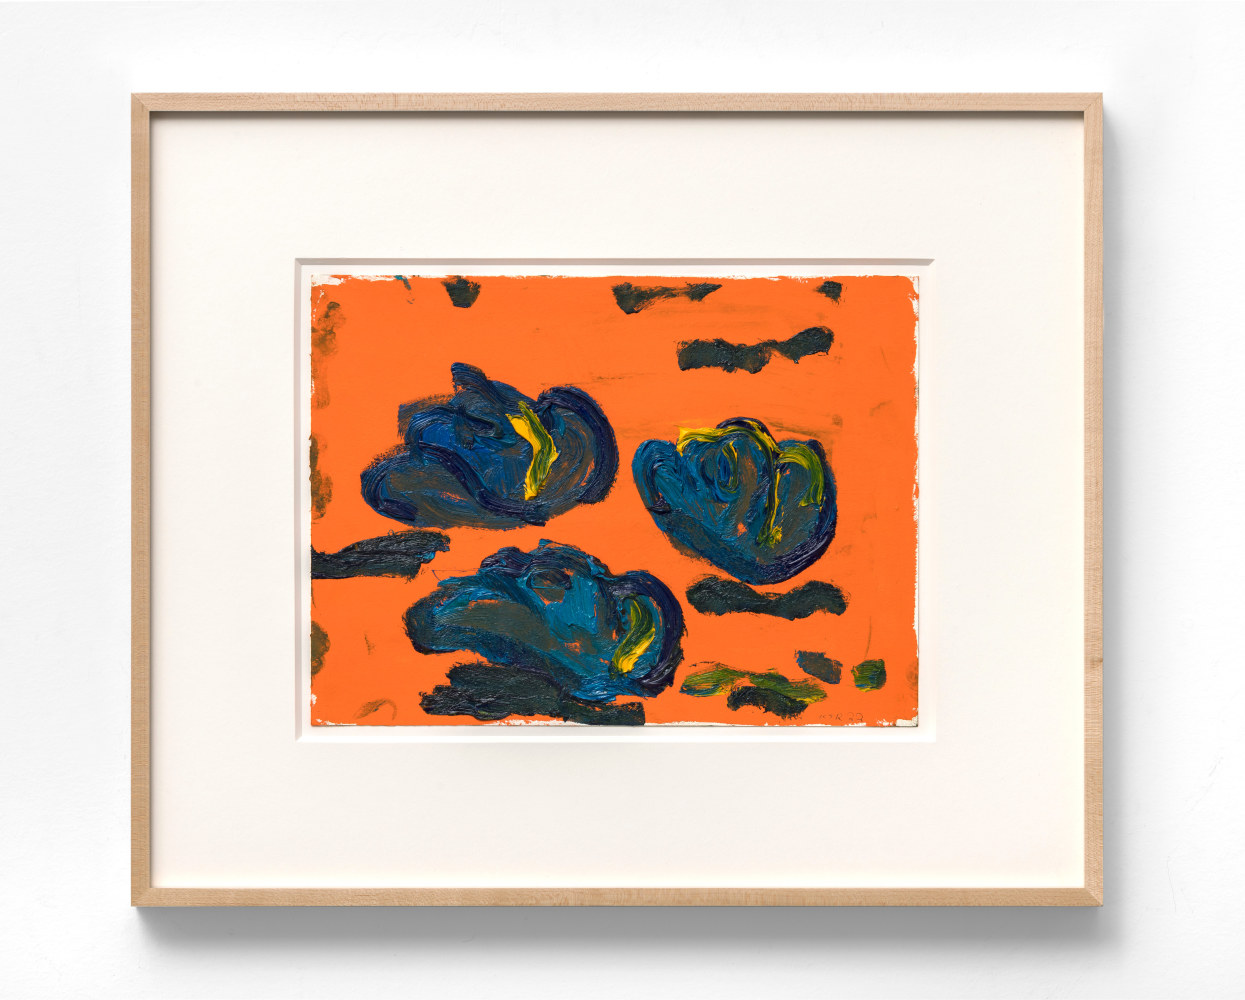 Ken Taylor Reynaga
Sombrero (rock d), 2022
Oil on paper
9h x 12w in
22.86h x 30.48w cm